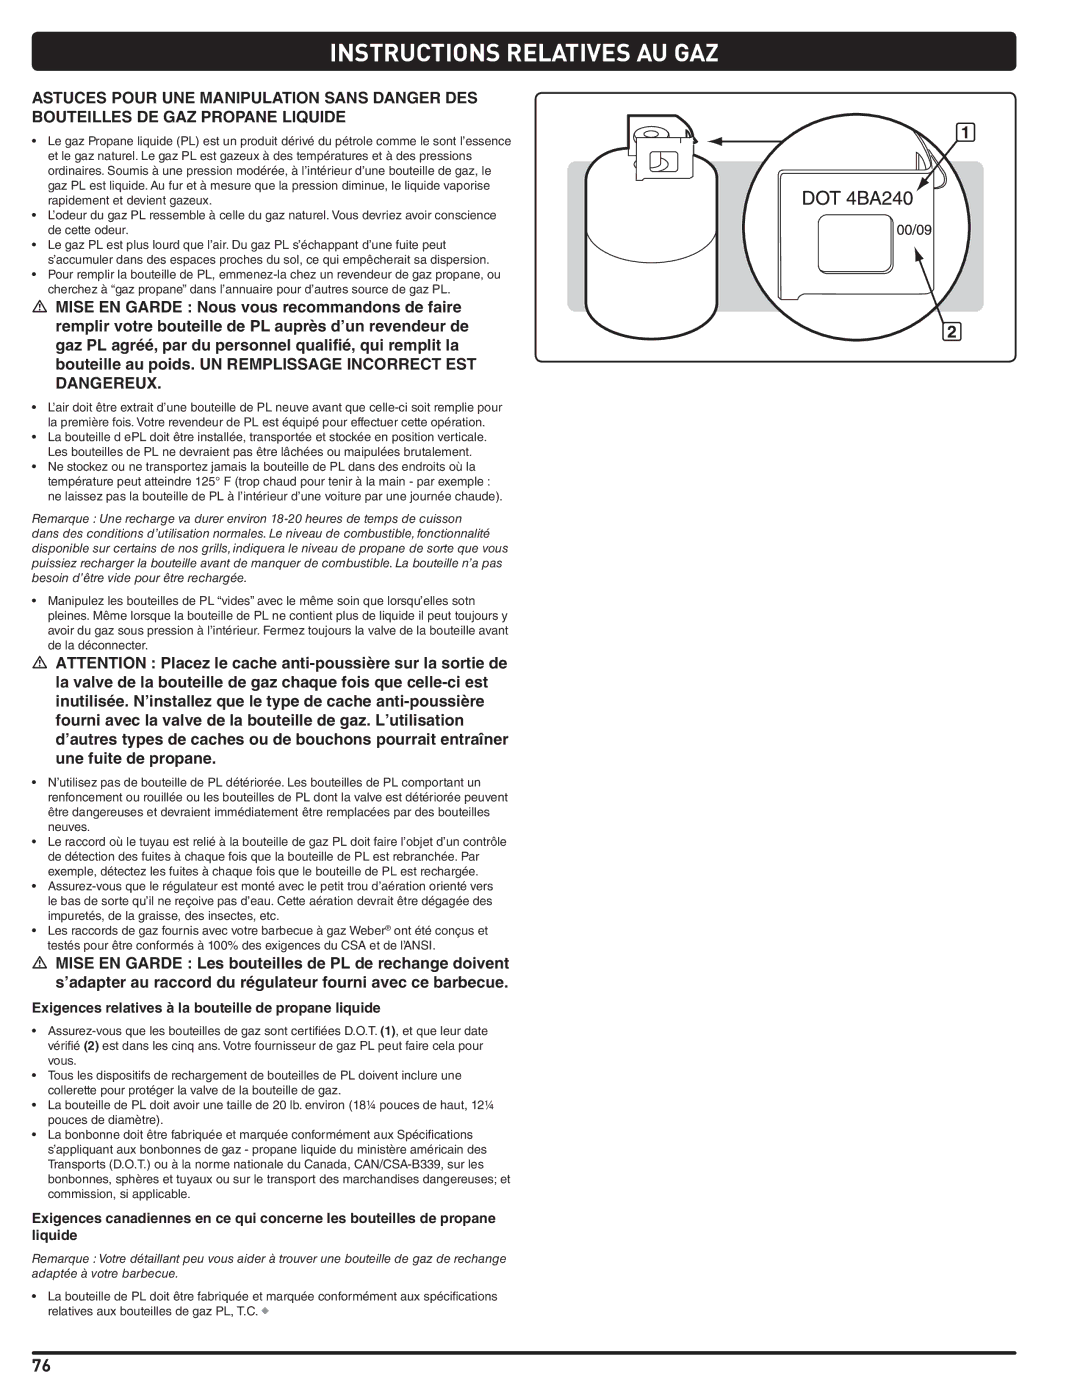 Weber Weber, 660- LP manual Instructions Relatives AU GAZ, Exigences relatives à la bouteille de propane liquide 